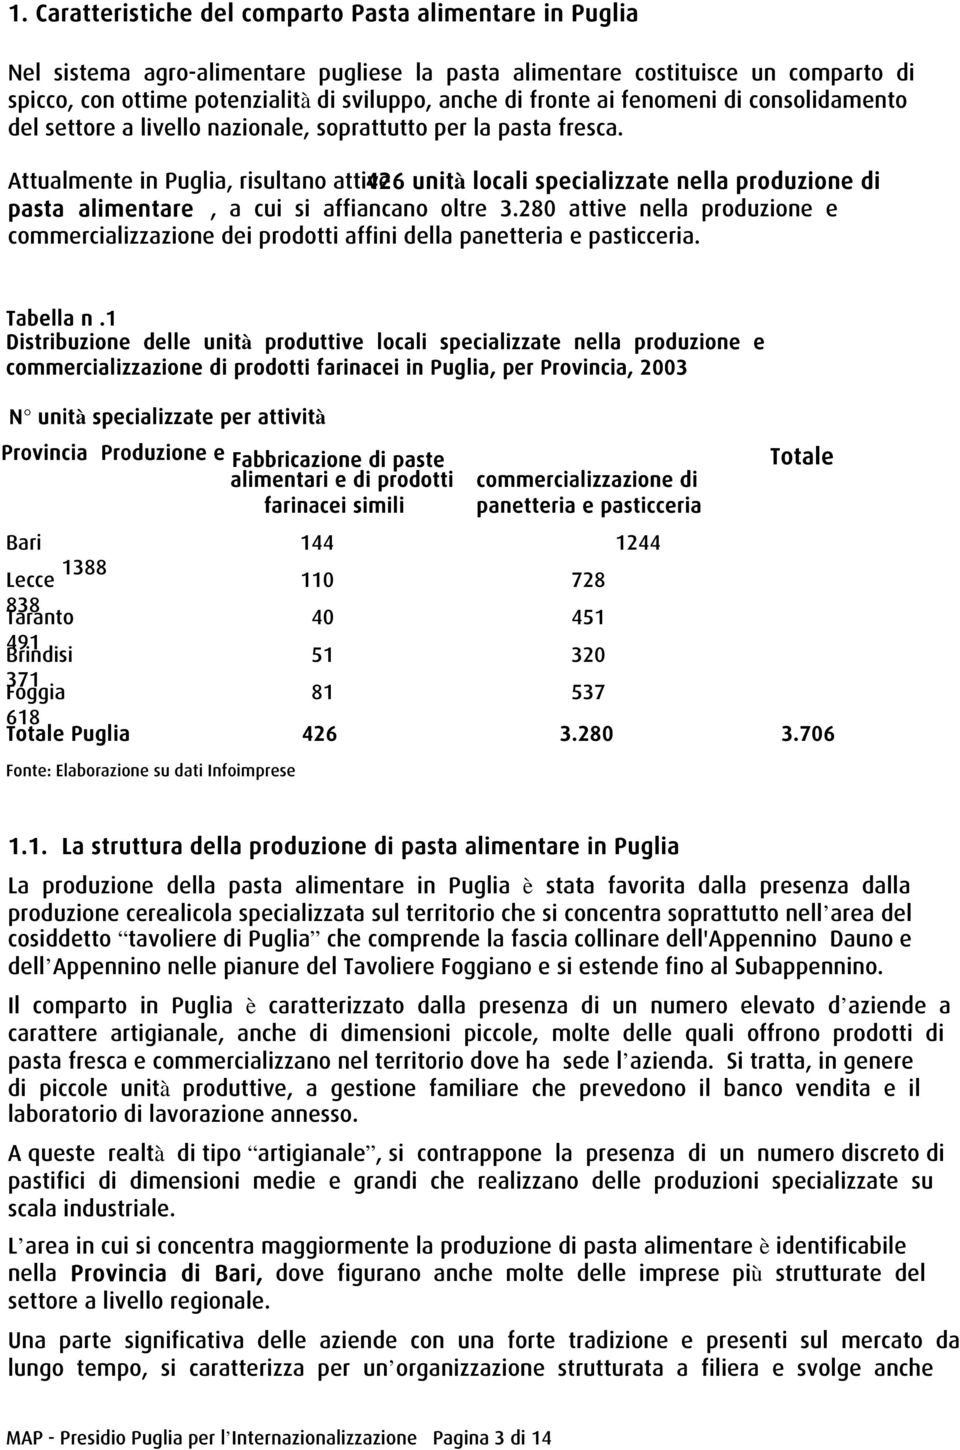 Attualmente in Puglia, risultano attive 426 unità locali specializzate nella produzione di pasta alimentare, a cui si affiancano oltre 3.